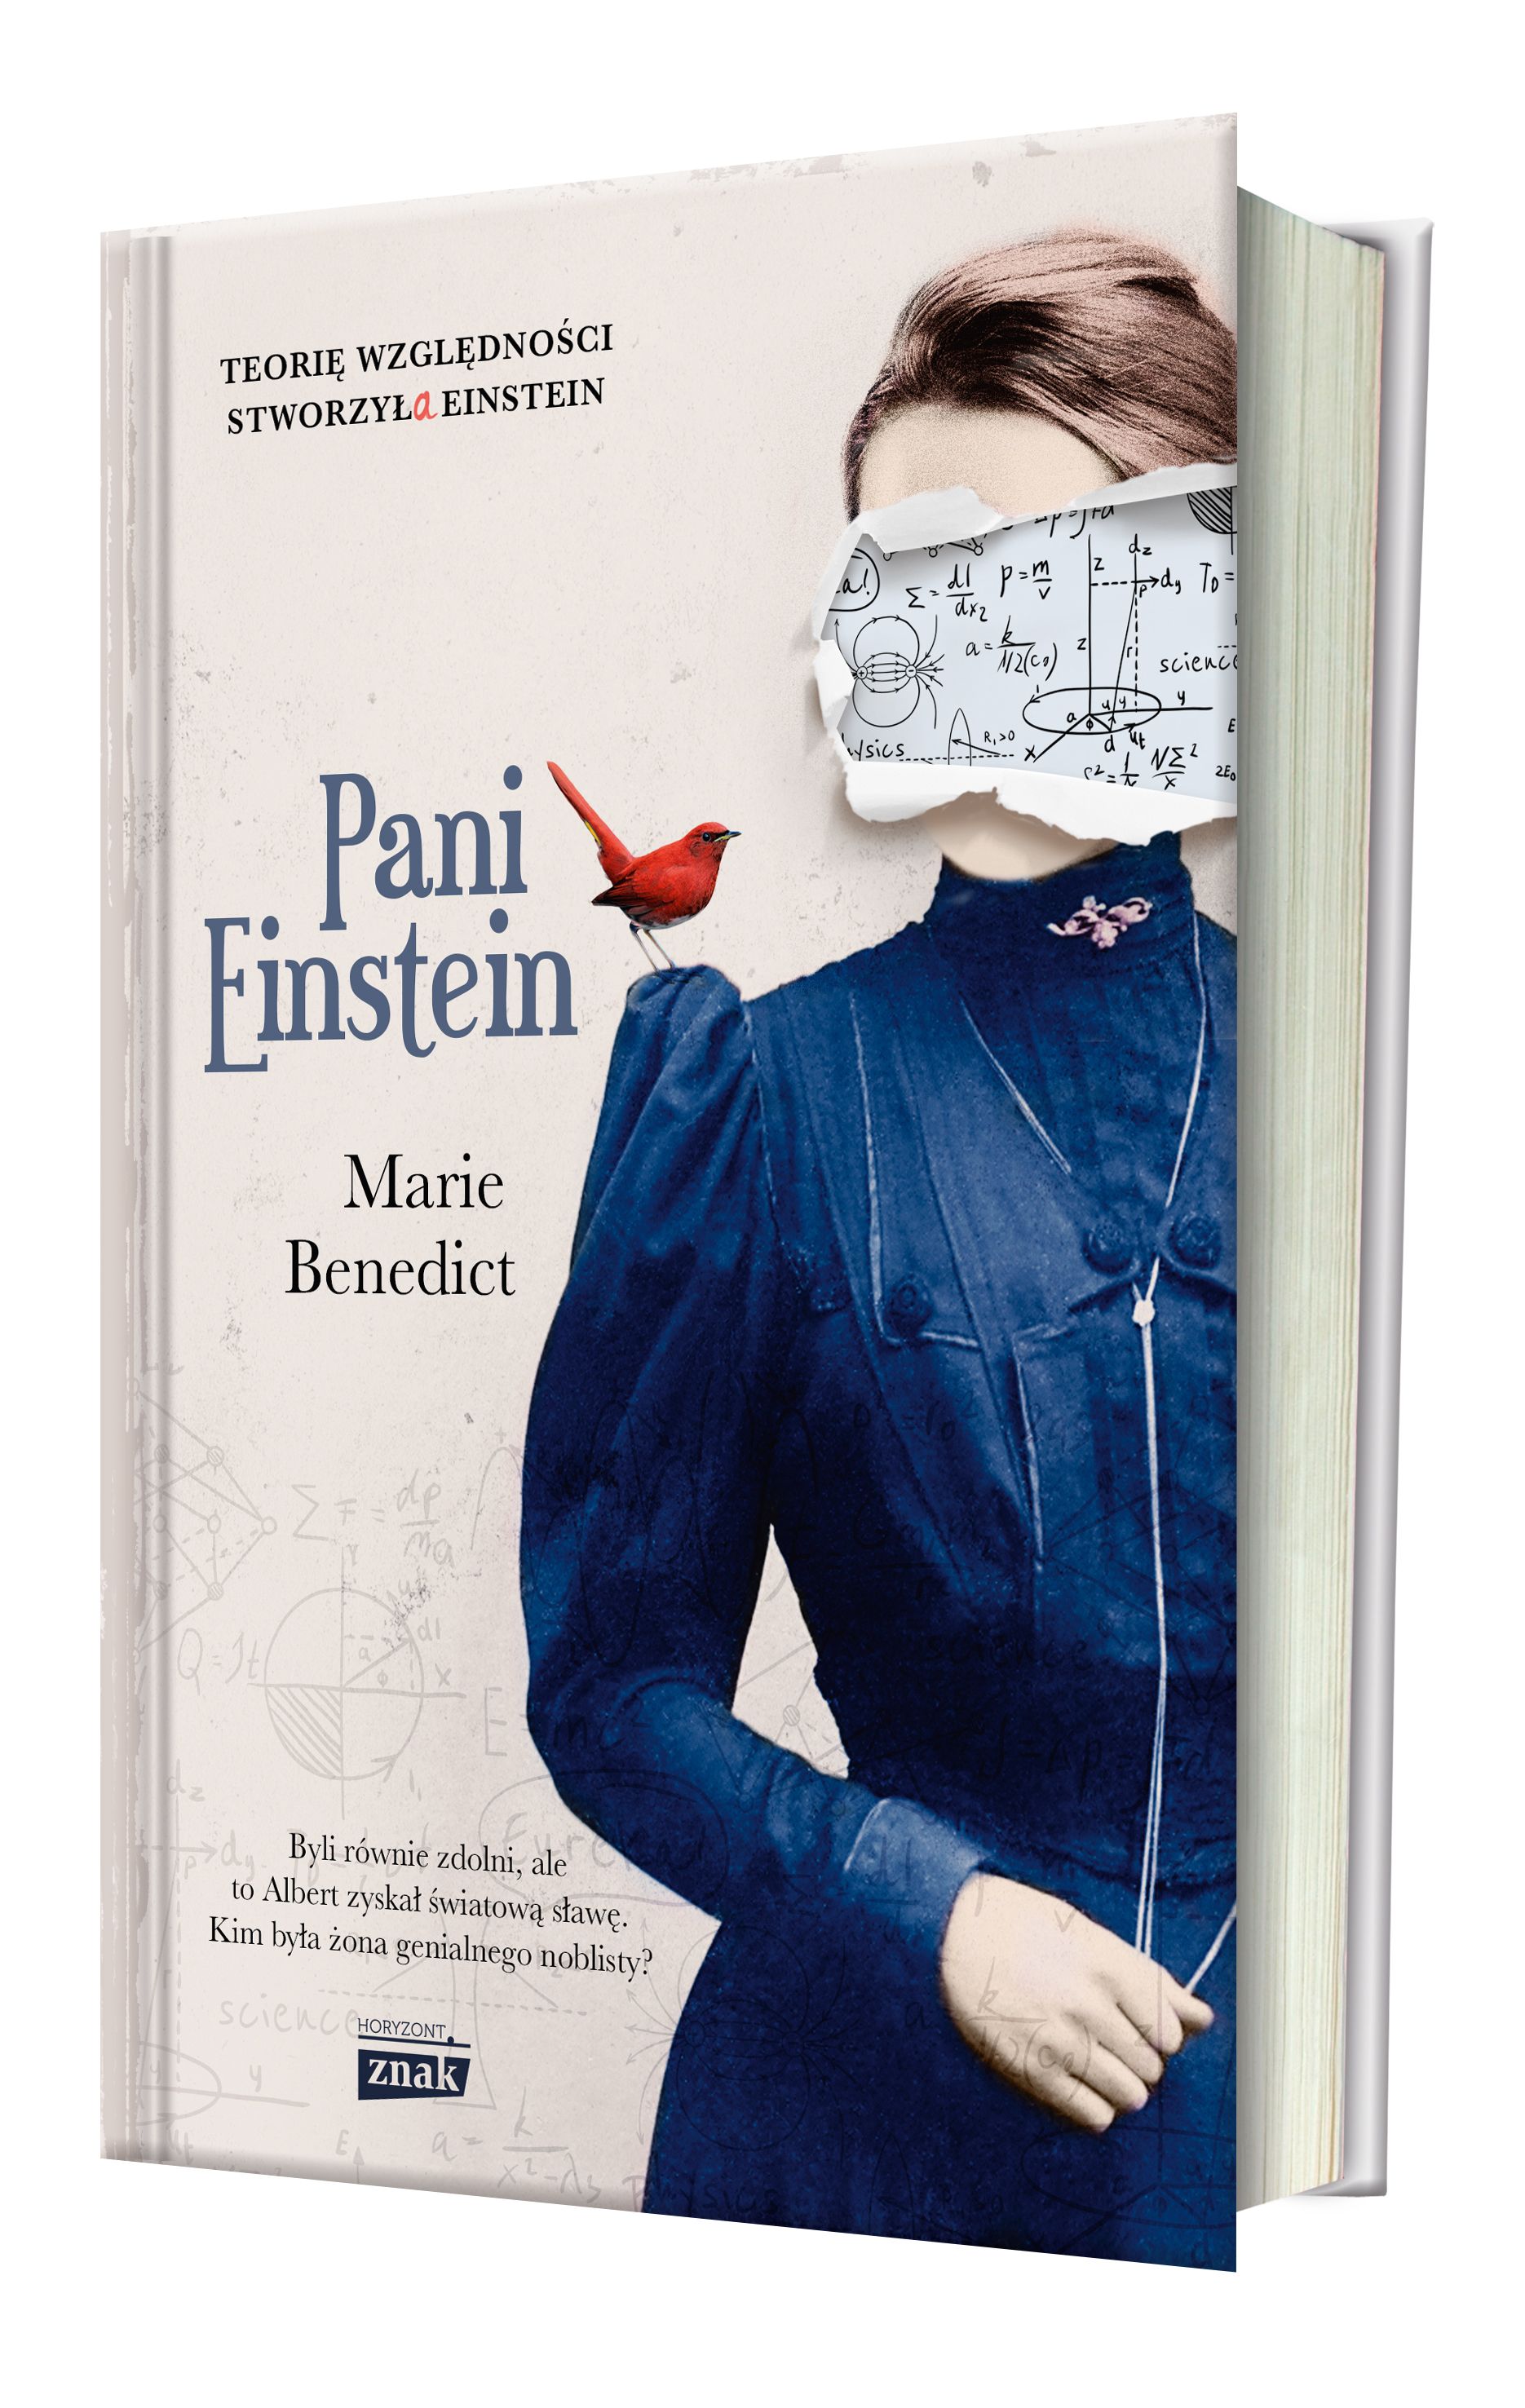 Poruszającą historię Milevy Marić znajdziecie w powieści Marie Benedict zatytułowanej "Pani Einstein" (Znak Horyzont 2017).